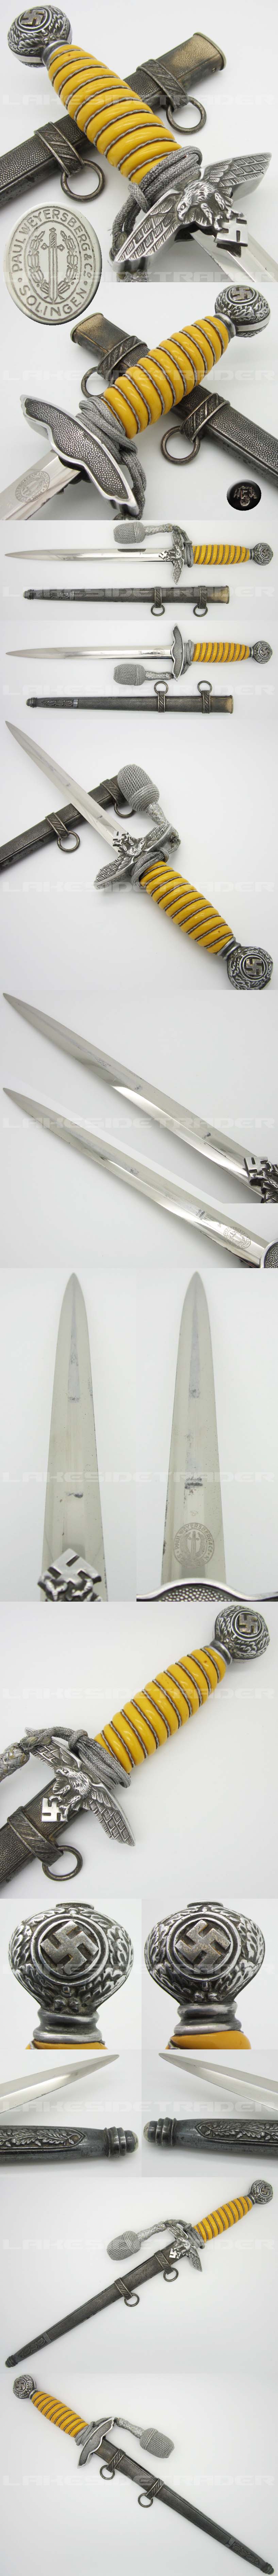 2nd Model Luftwaffe Dagger by P. Weyersberg